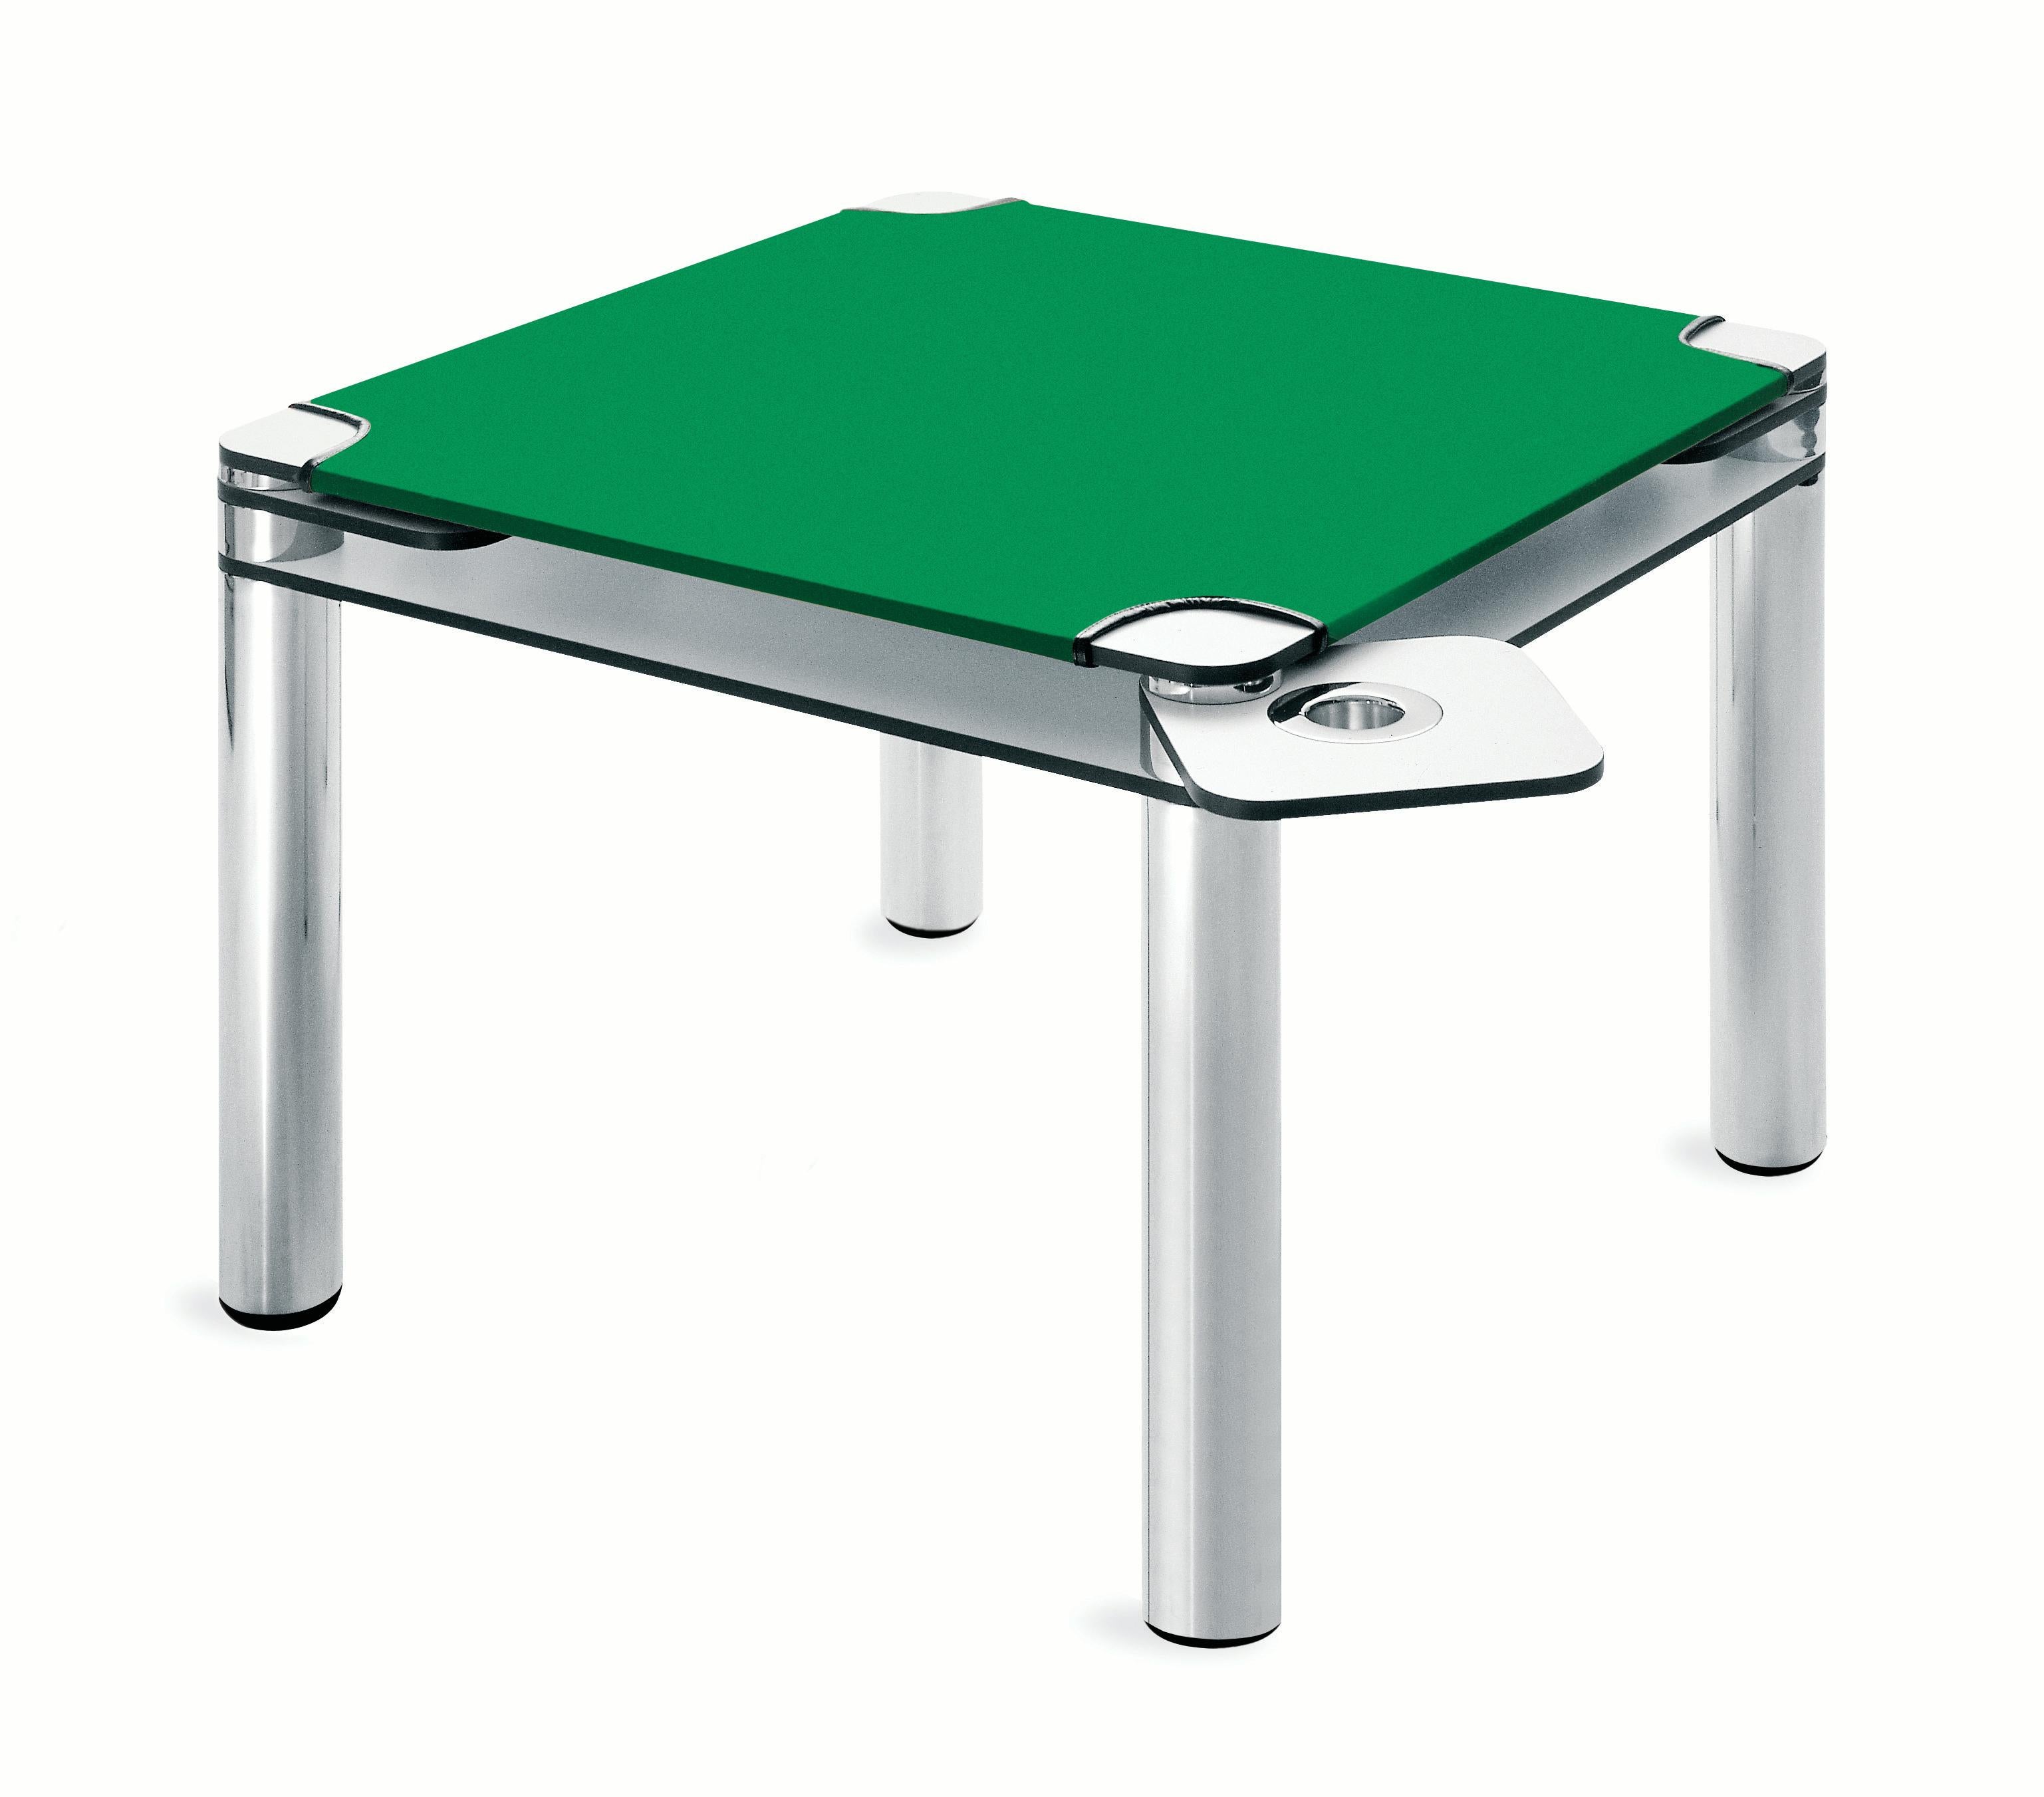 Table de poker Zanotta à double plateau en stratifié plastique blanc et cuir Baize vert par Joe Colombo

Double plateau en plastique stratifié blanc de 9/16